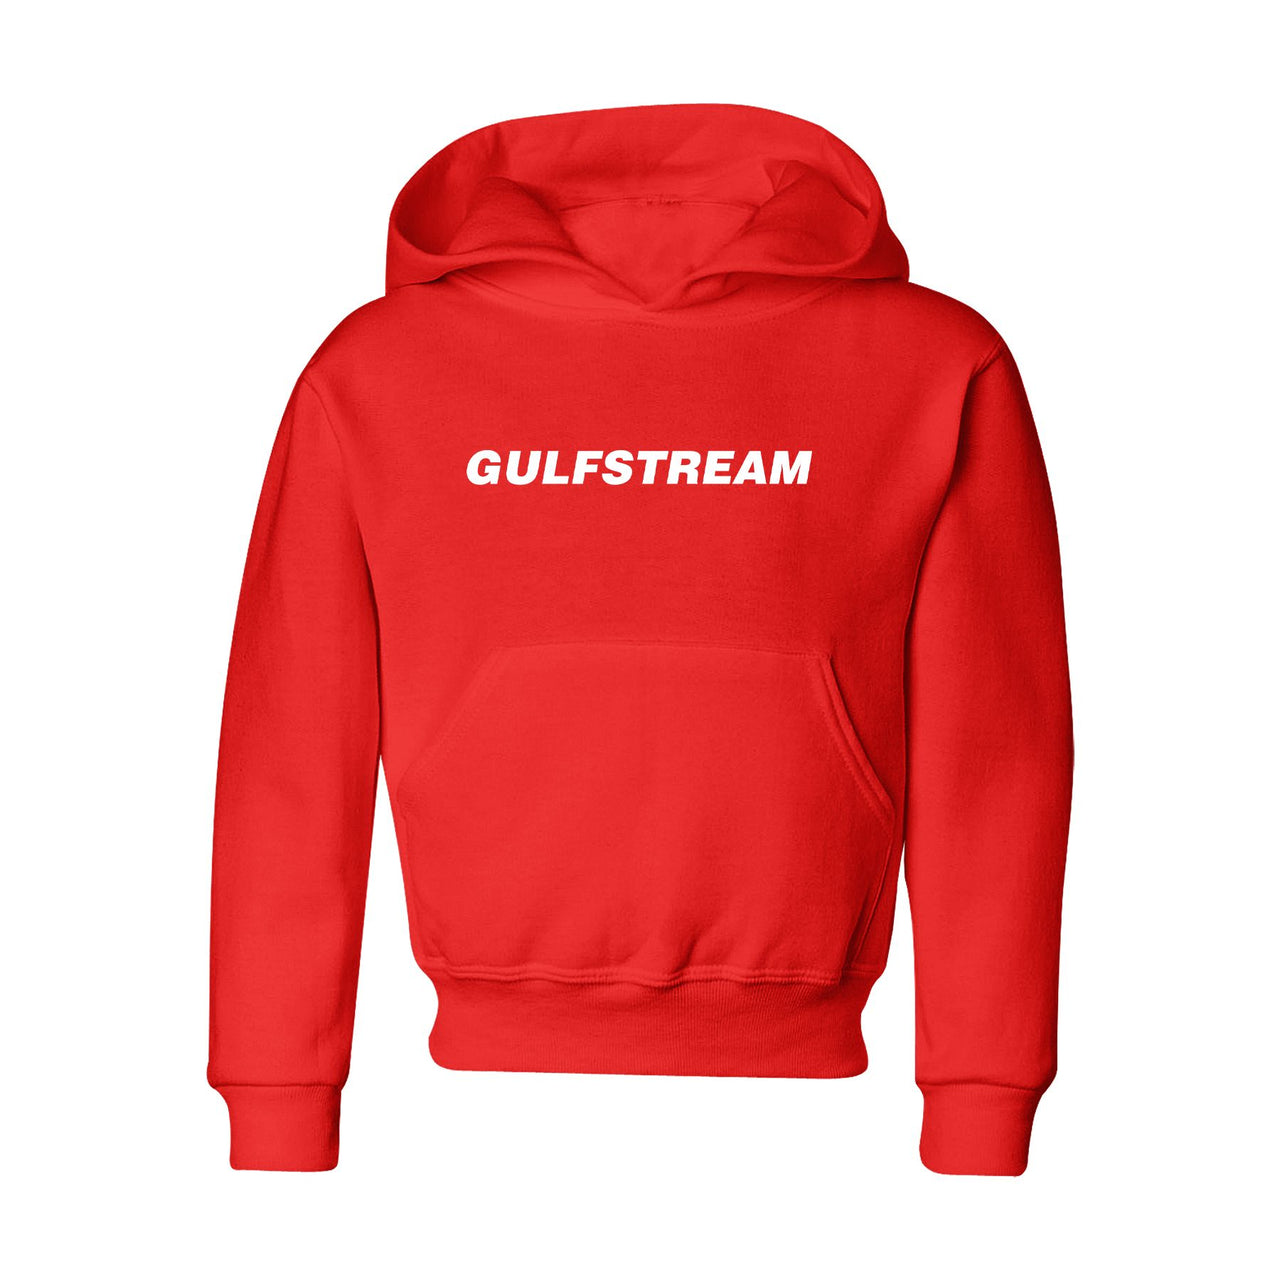 Gulfstream & Text Designed "CHILDREN" Hoodies